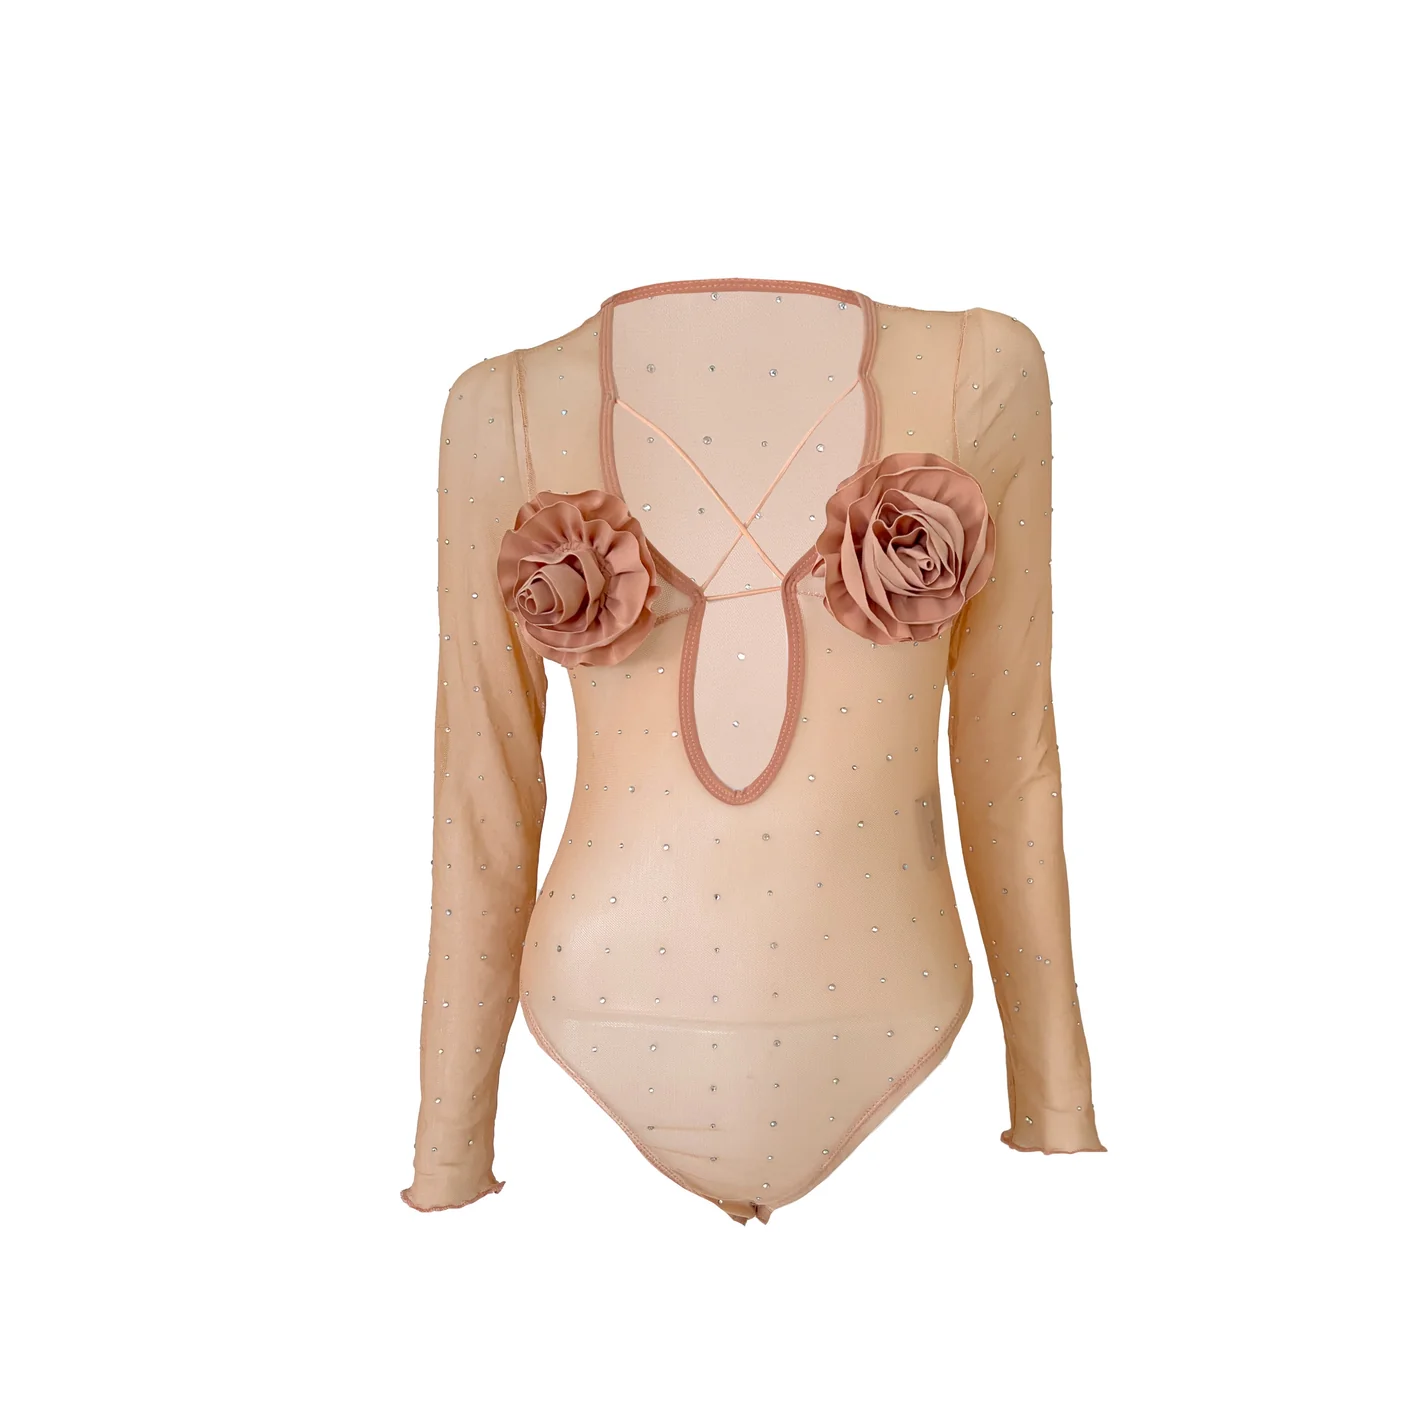 Nude Roseless bodysuit